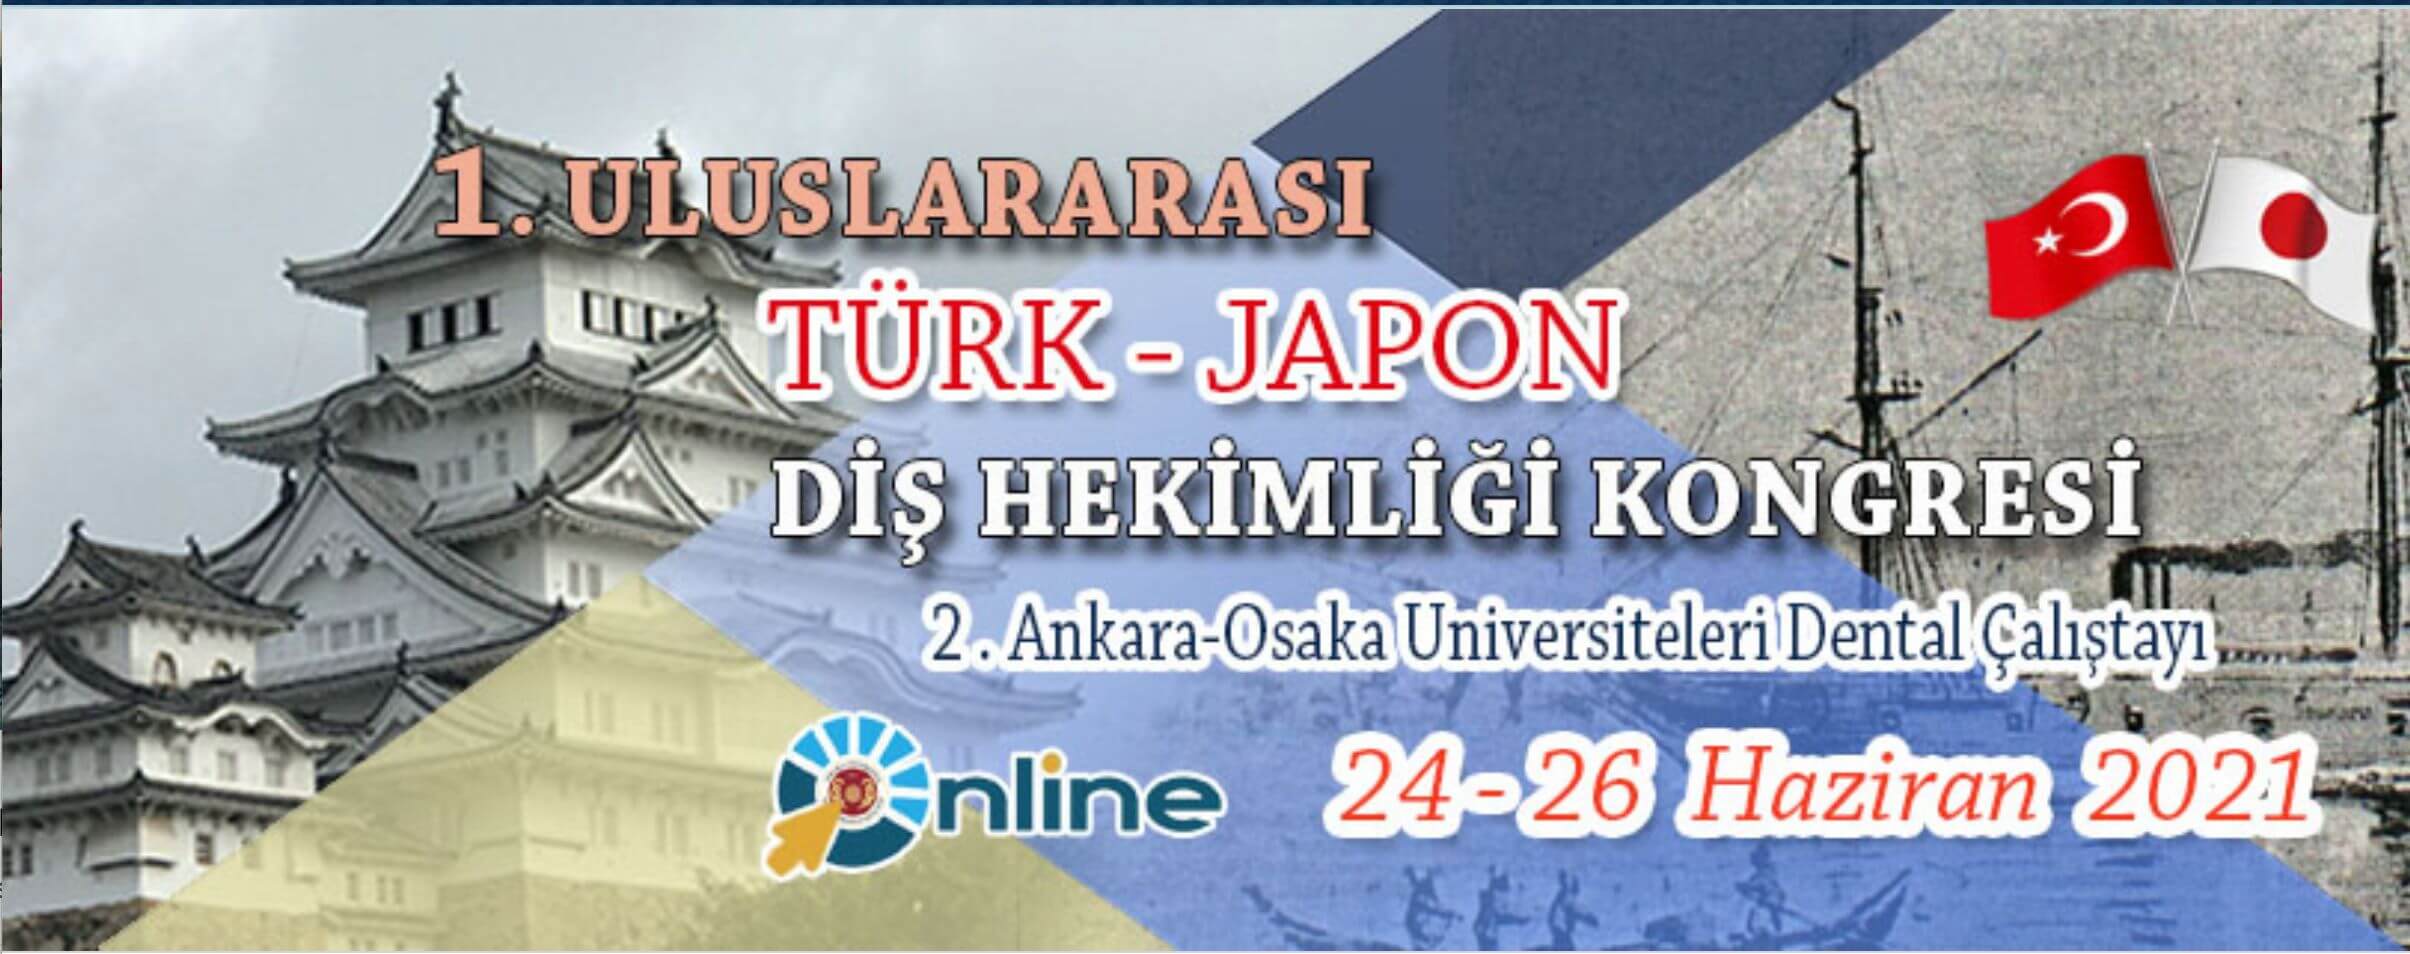 CranioCatch haber ve blog sayfası-Japon-Türk hekimi kongresi